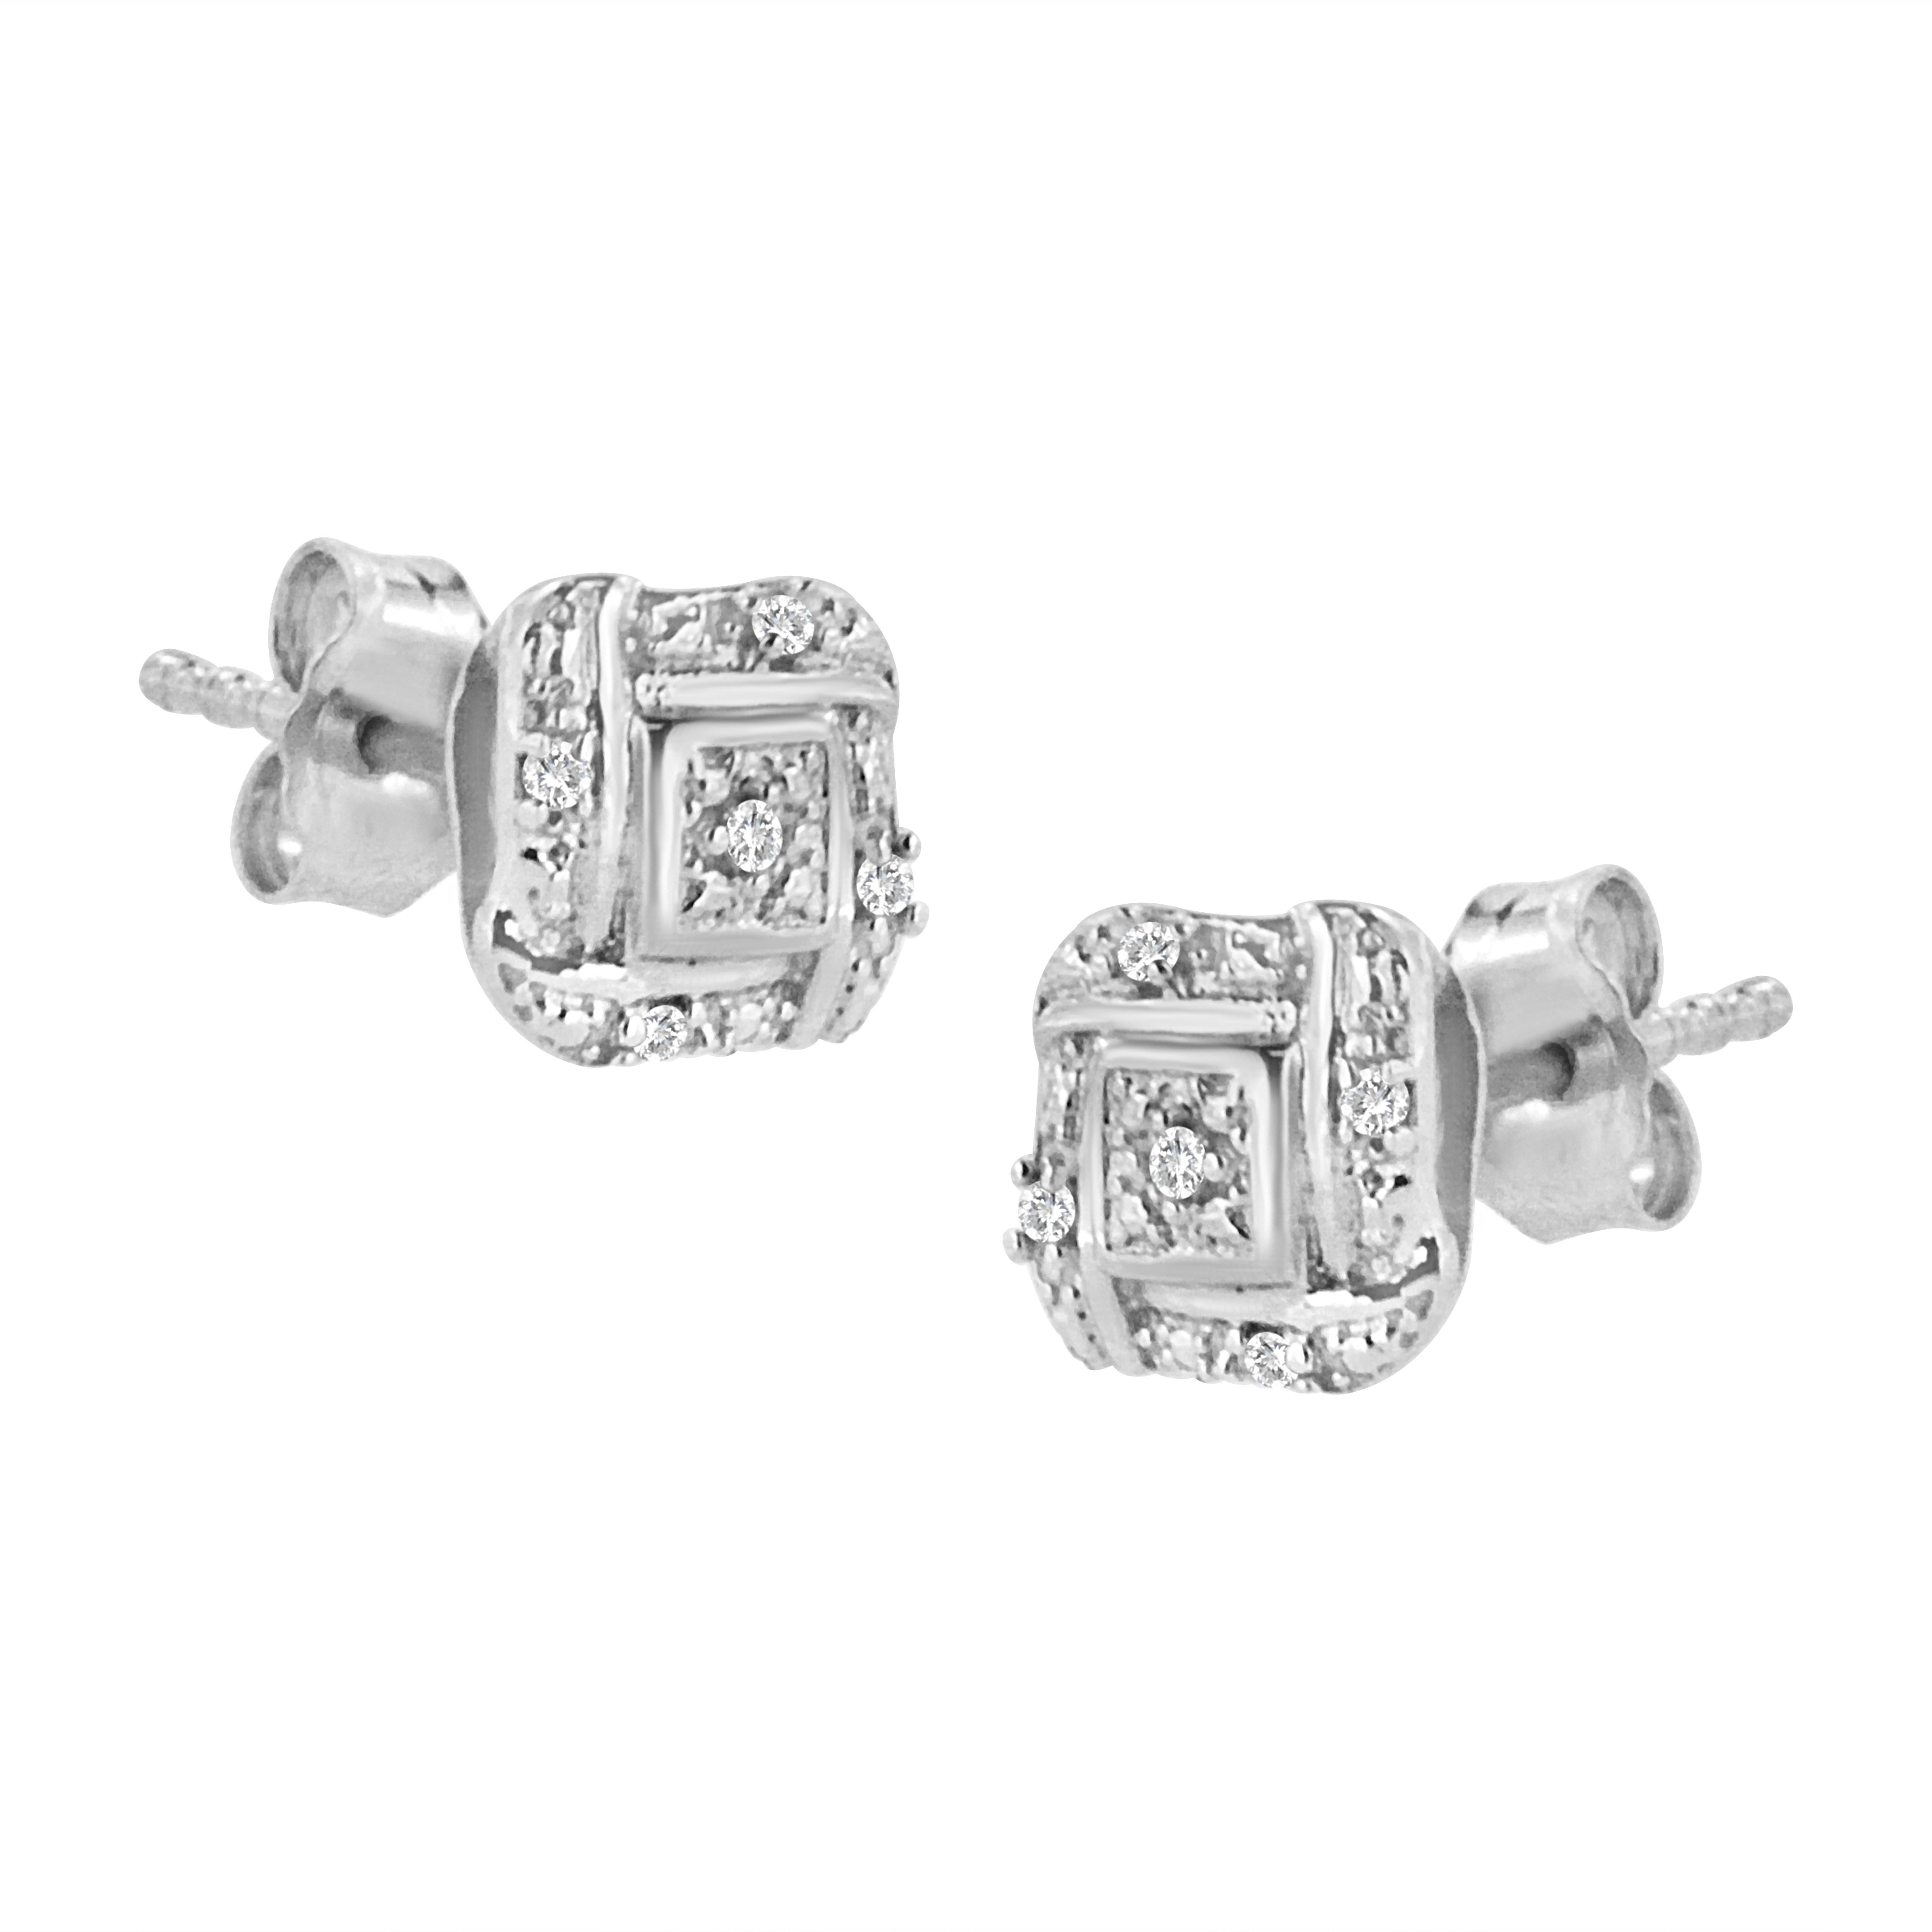 Diese schlichten, aber klassischen Diamantohrstecker sind aus echtem 925er Sterlingsilber gefertigt und mit Rhodium (einem Platinmetall) beschichtet, damit sie ein Leben lang anlauffrei getragen werden können. Diese Ohrringe sind mit einem